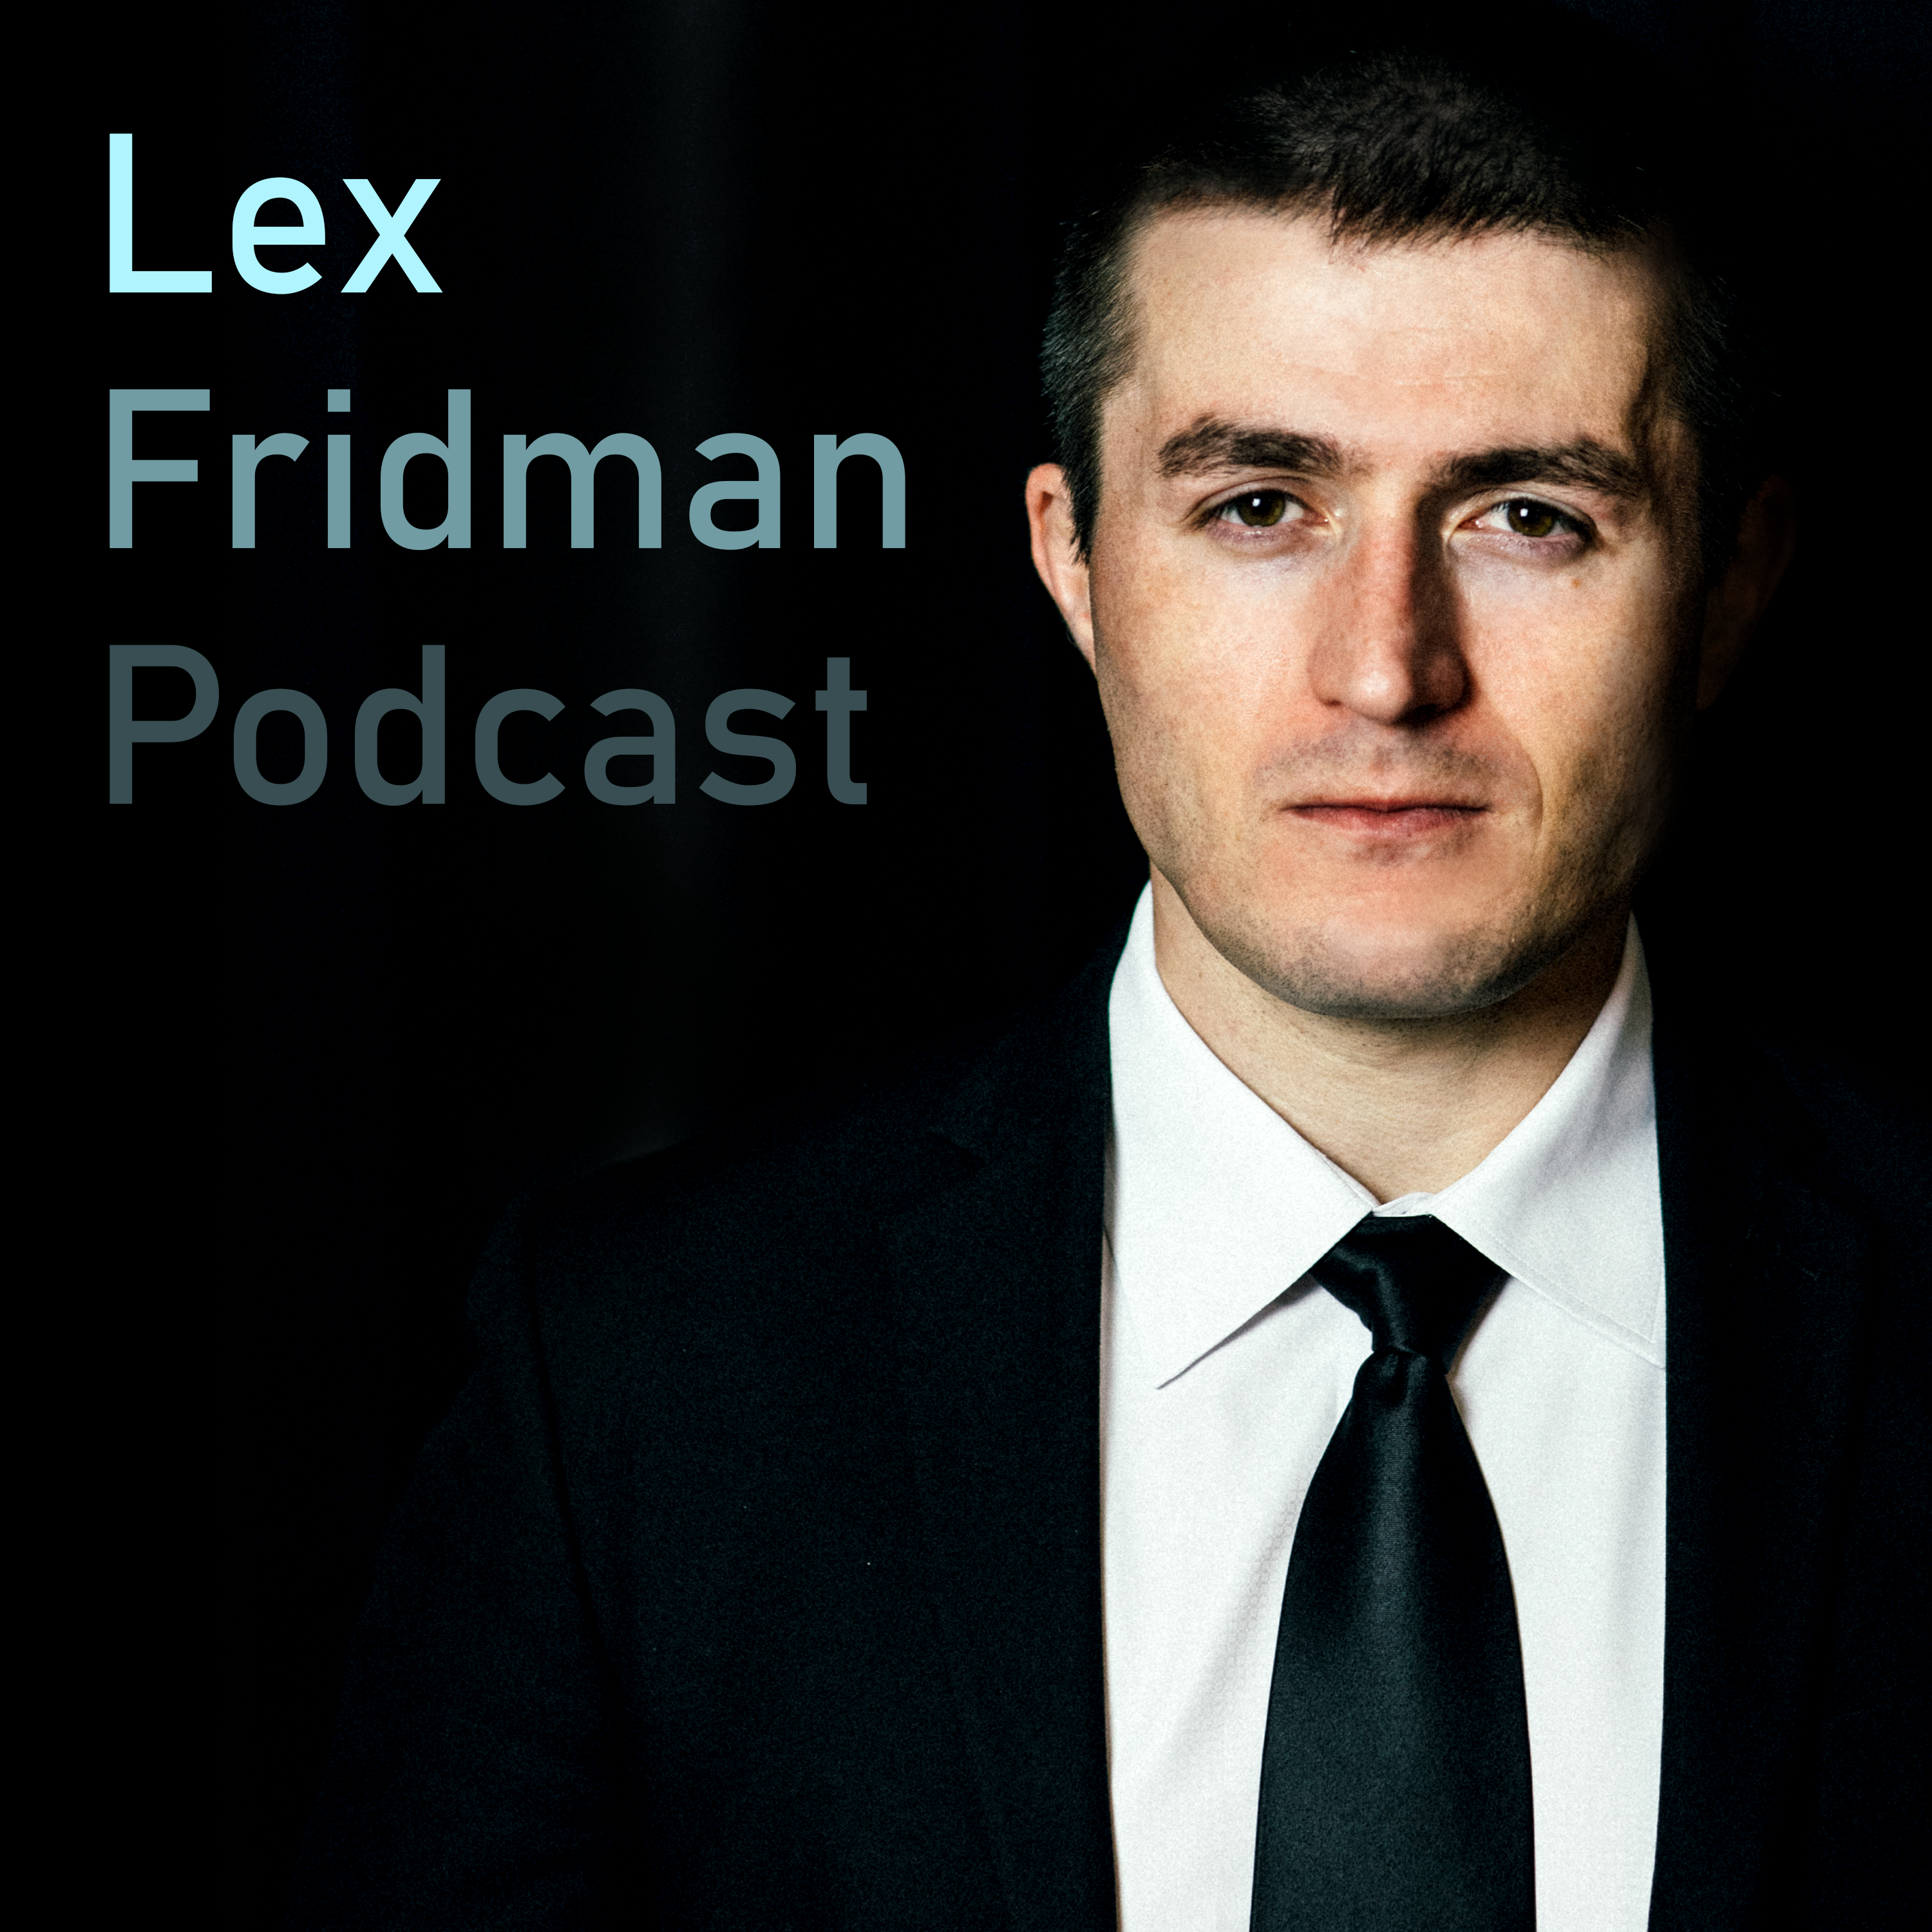 Lex Fridman